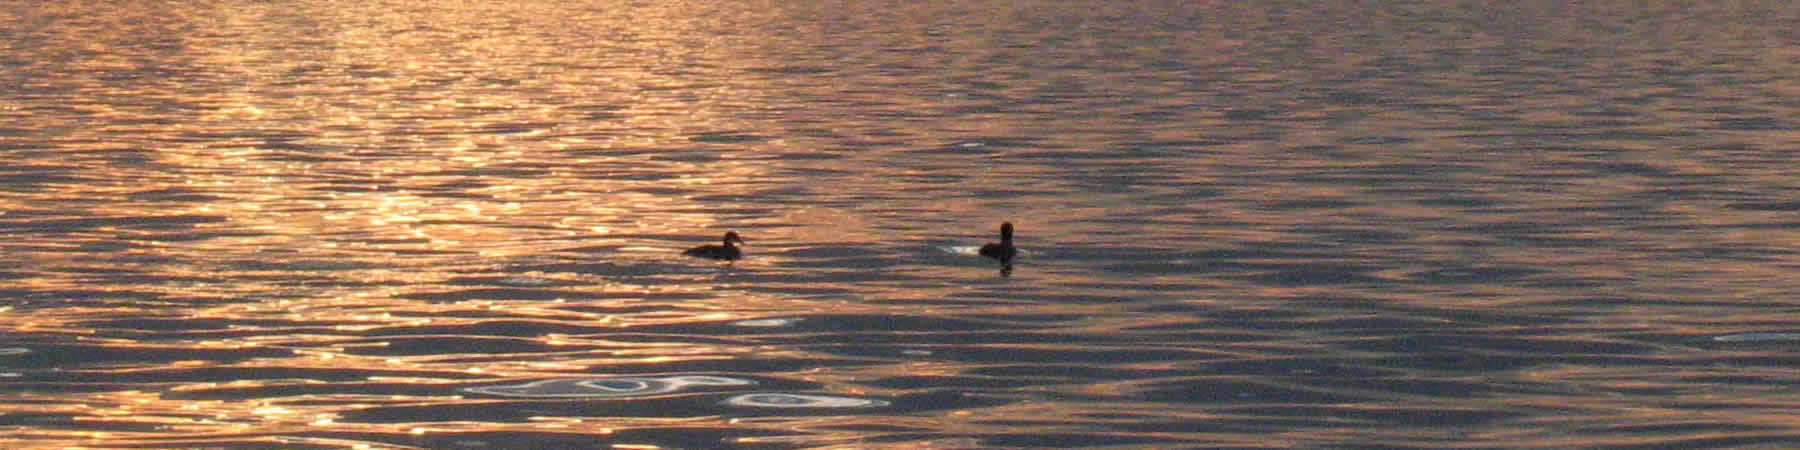 Lake Detroiters Association Aquatic Invasive Species